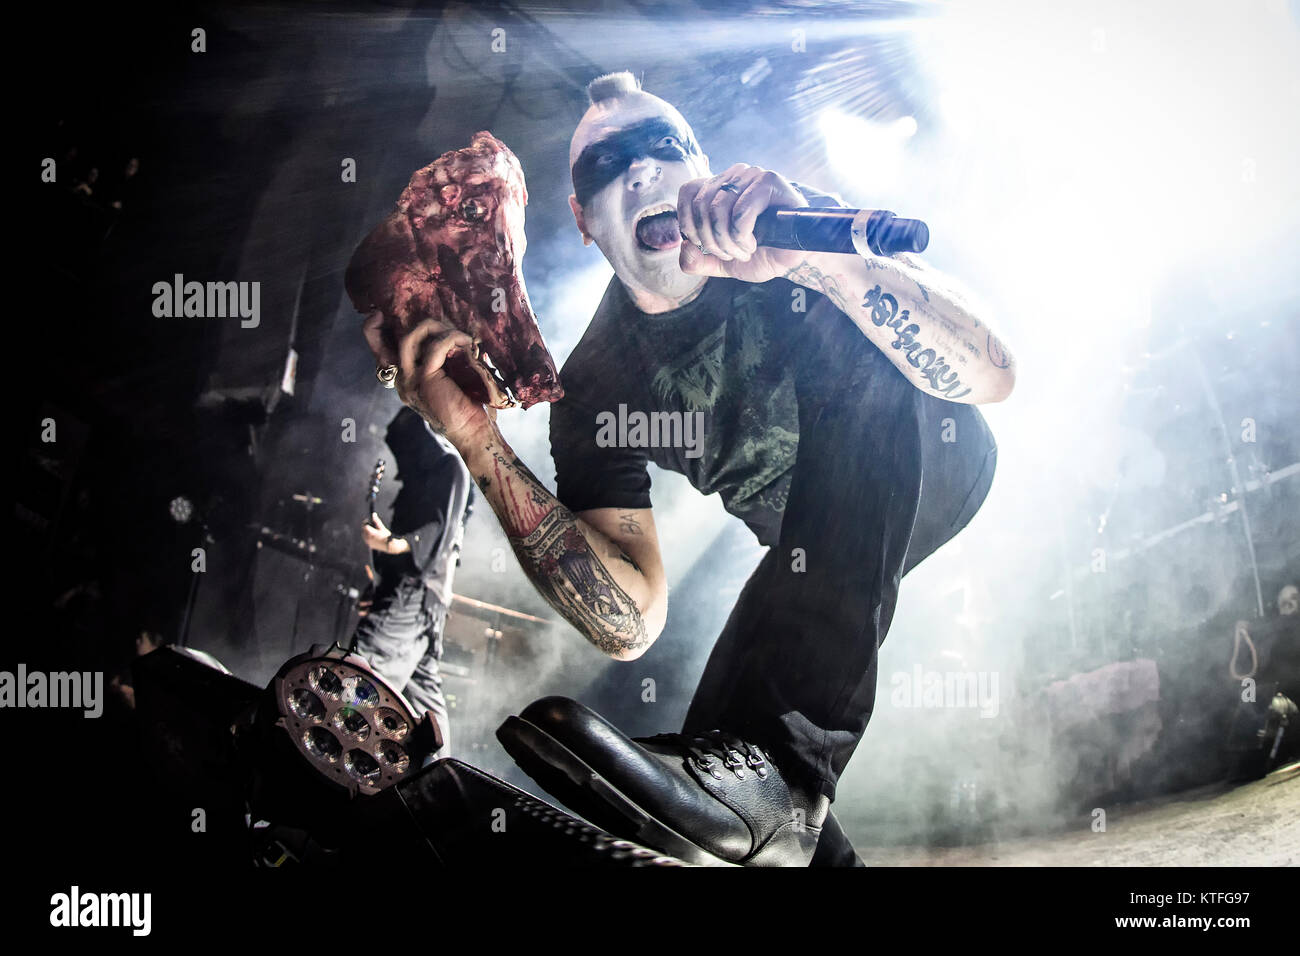 La banda de Black Metal noruego Mayhem realiza un concierto en vivo en el Rockefeller como parte del festival Inferno Metal Festival 2016 en Oslo. El concierto fue un show especial incluyen a ex-miembros de las bandas como ere vocalista Maniac en directo sobre un escenario. Noruega, el 27/03 de 2016. Foto de stock